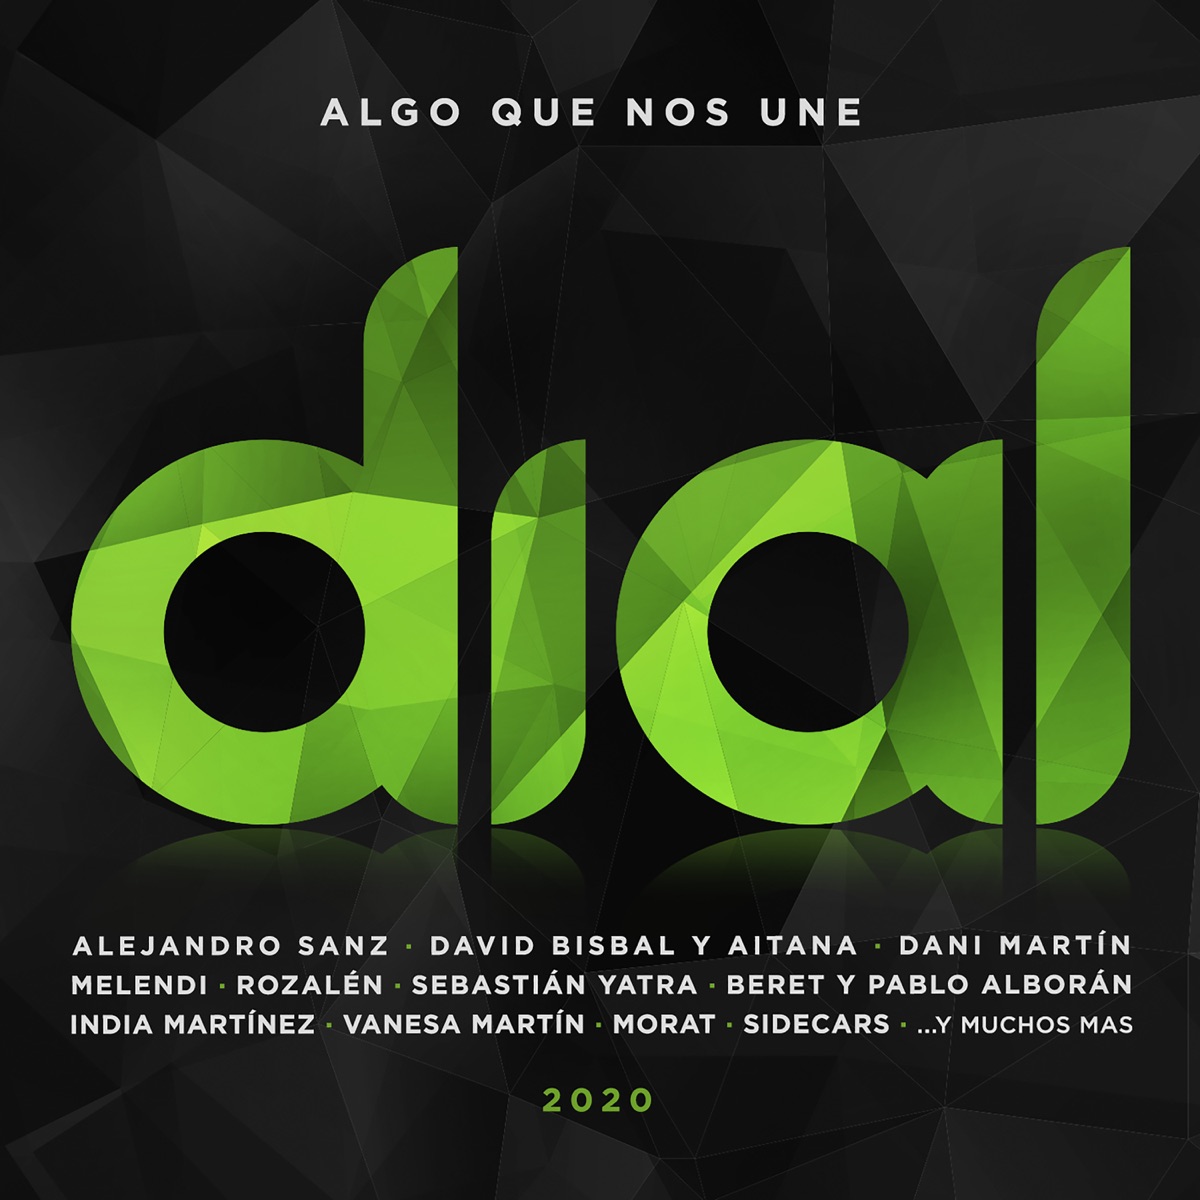 Cadena Dial 2021 - Álbum de Vários Artistas - Apple Music